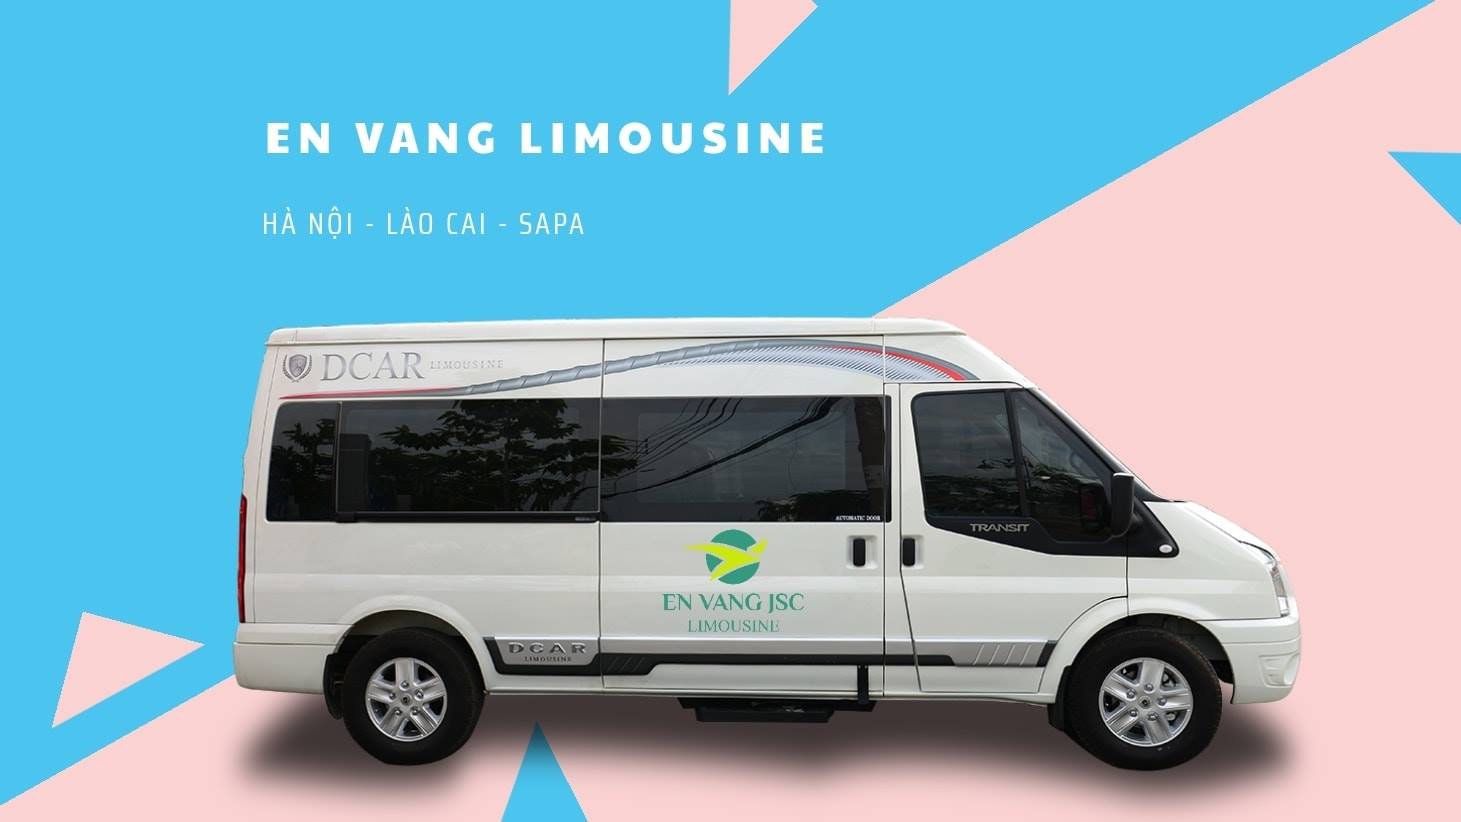 Vé xe limousine Hà Nội đi Sapa - Én Vàng Limousine